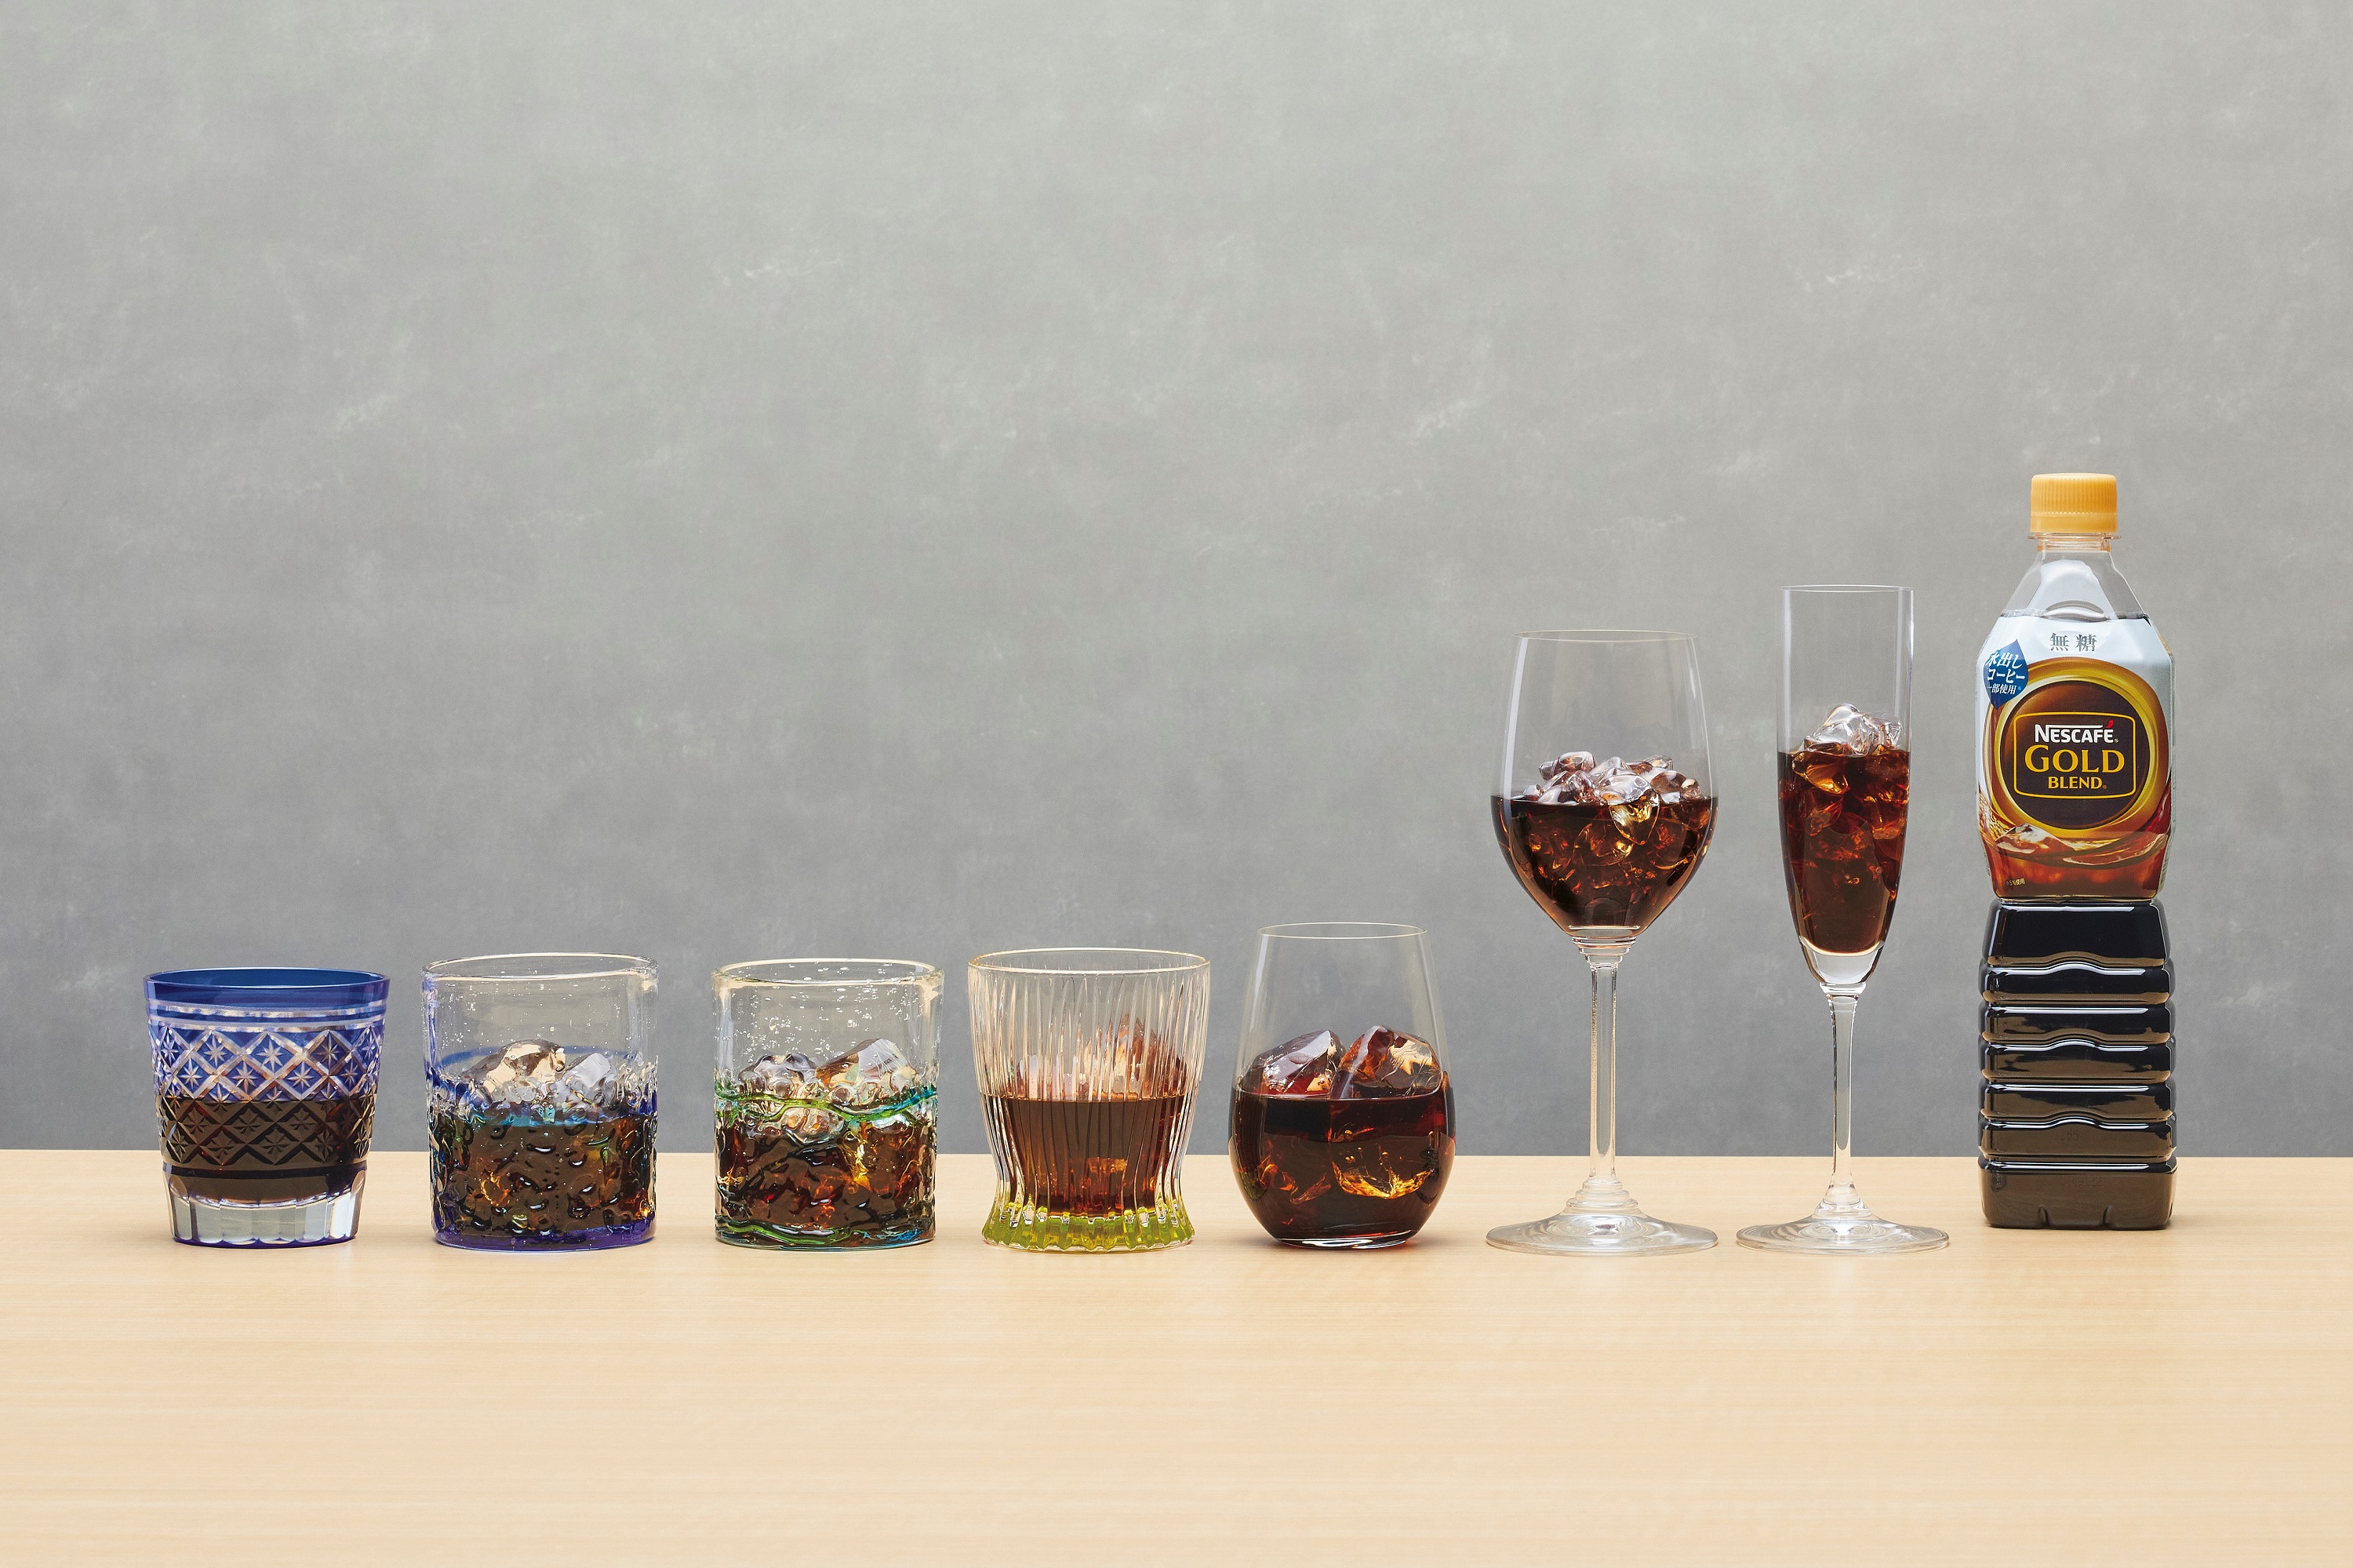 「グラスが選べる、上質なアイスコーヒー体験セットby ネスカフェ ゴールドブレンド」 ※イメージ